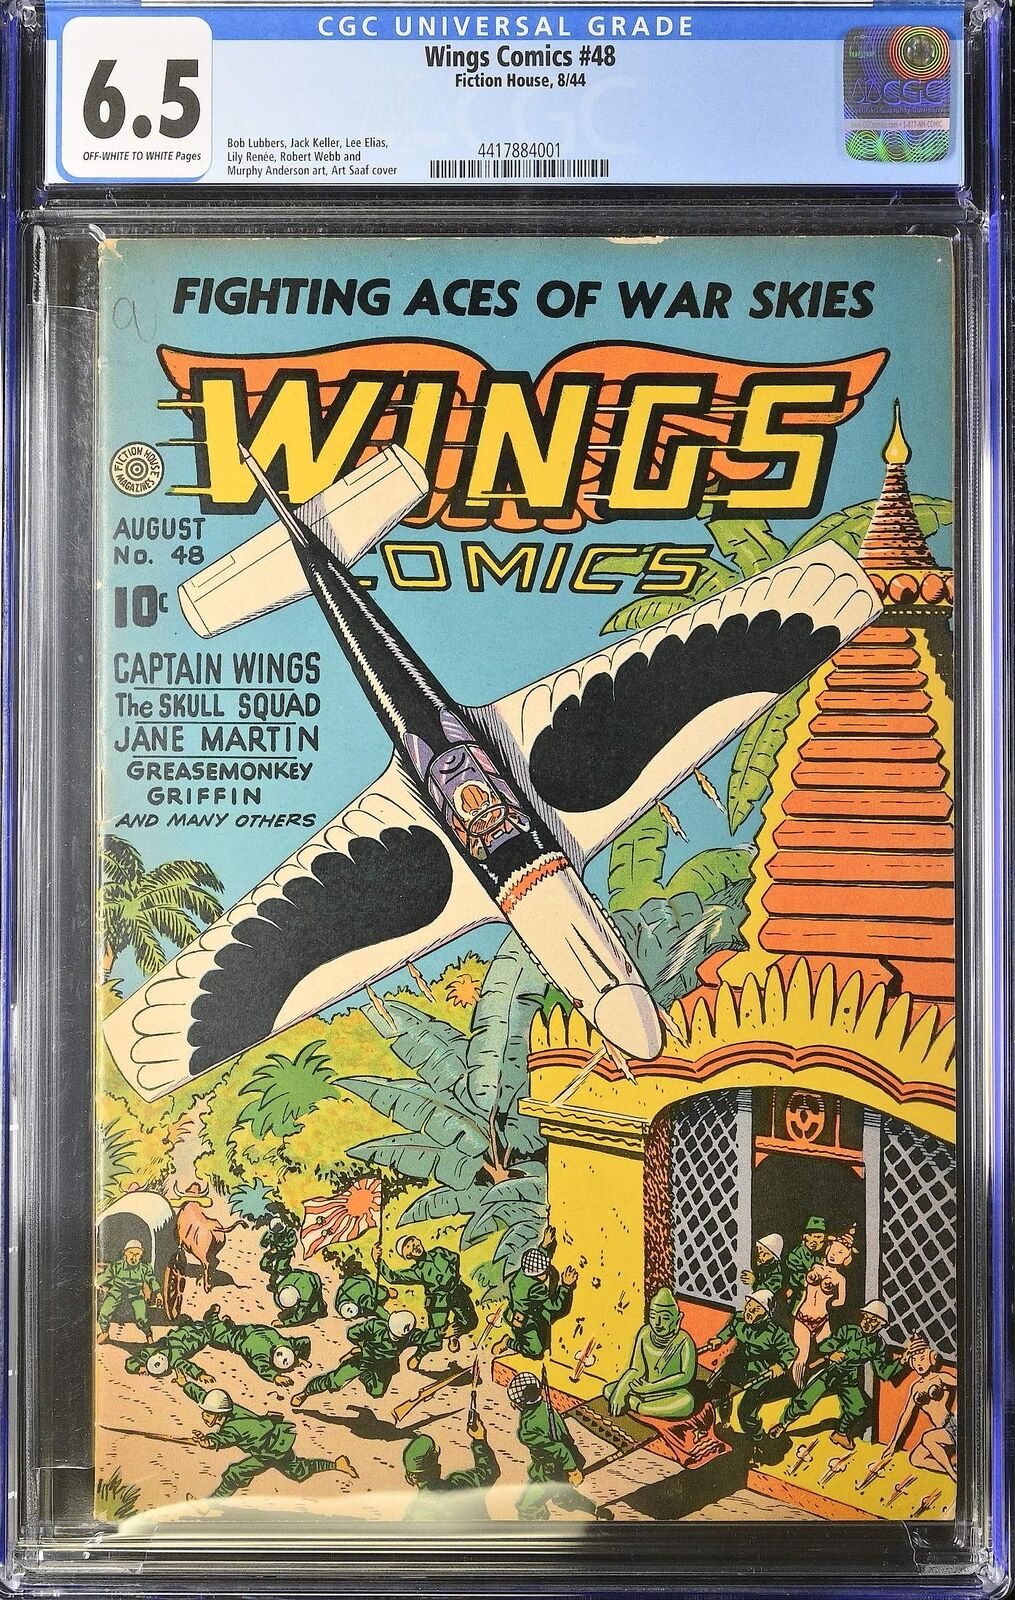 Wings Comics #48 Fiction House 1944 6.5 FN+ CGC Graded Art Saaf 1st Print Comic